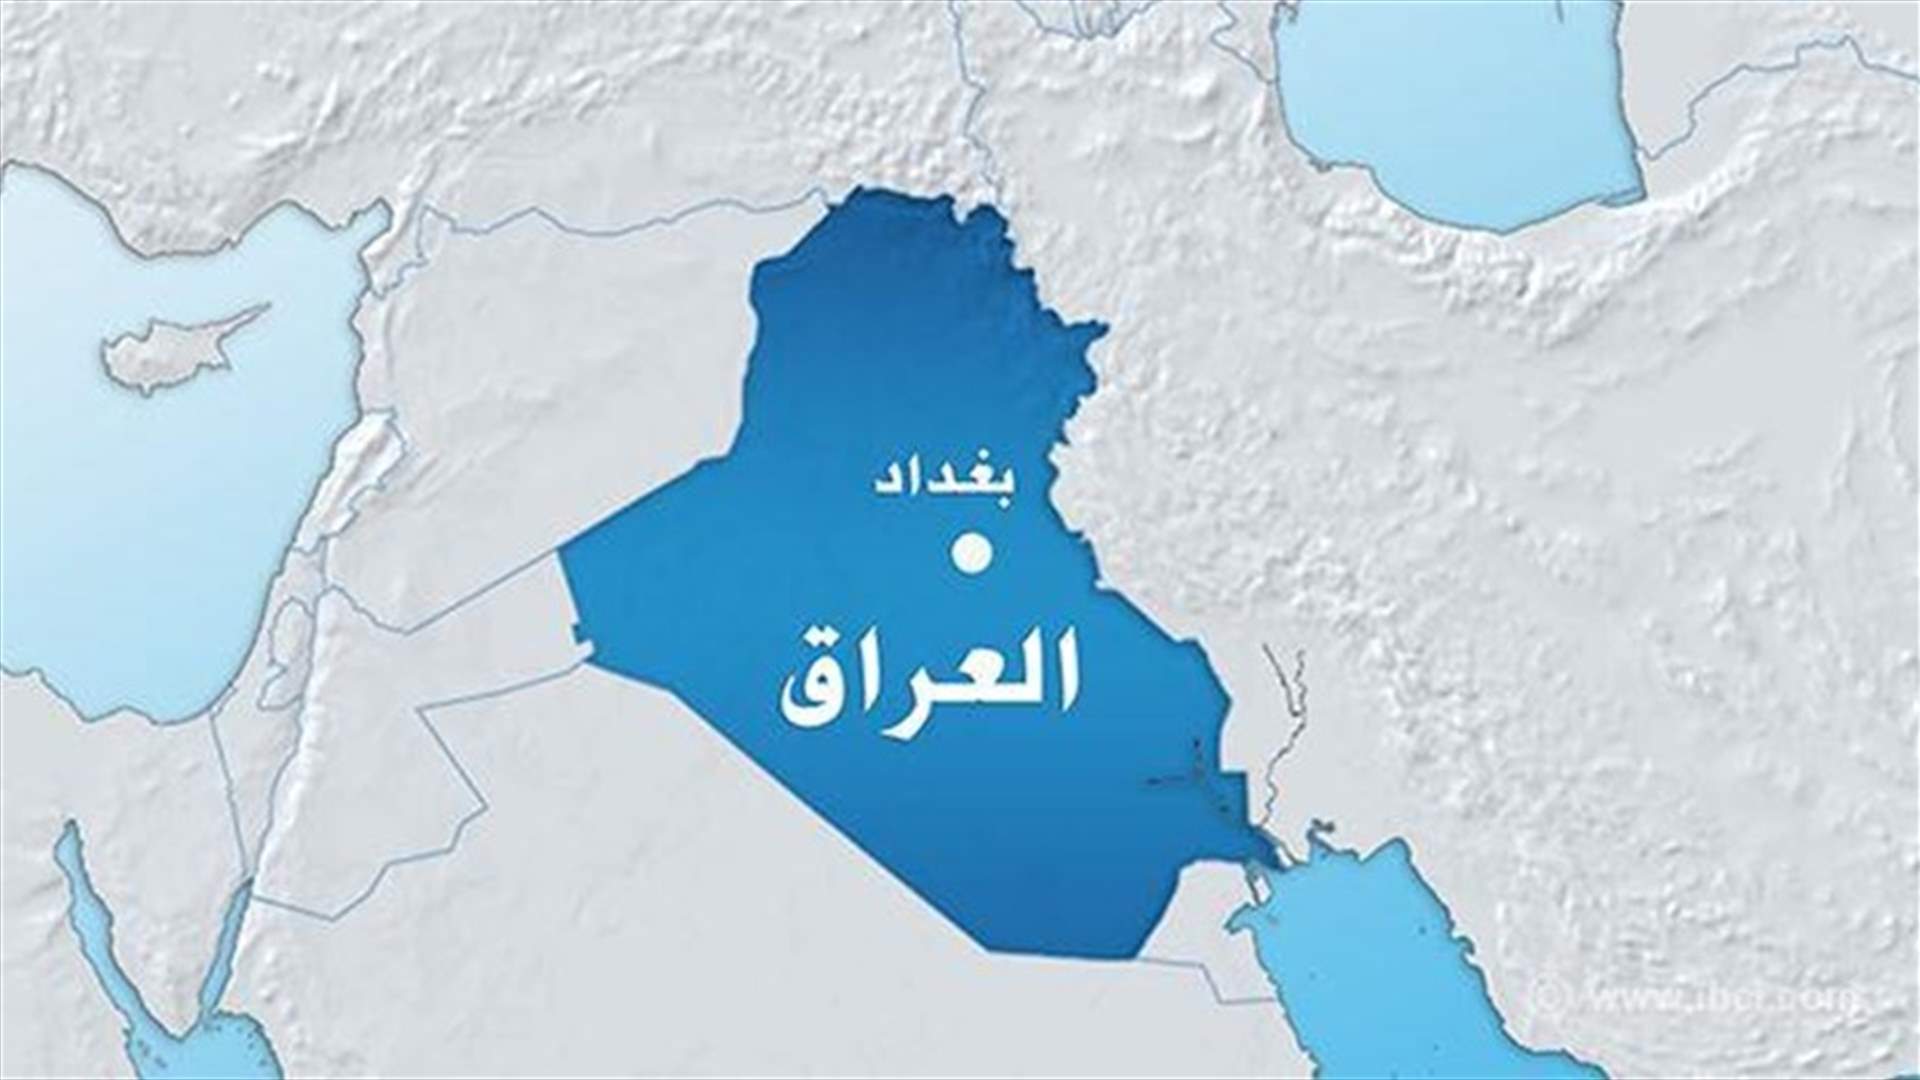 العثور على 150 جثة لافراد عشيرة عراقية تعارض الدولة الإسلامية بمقبرة جماعية